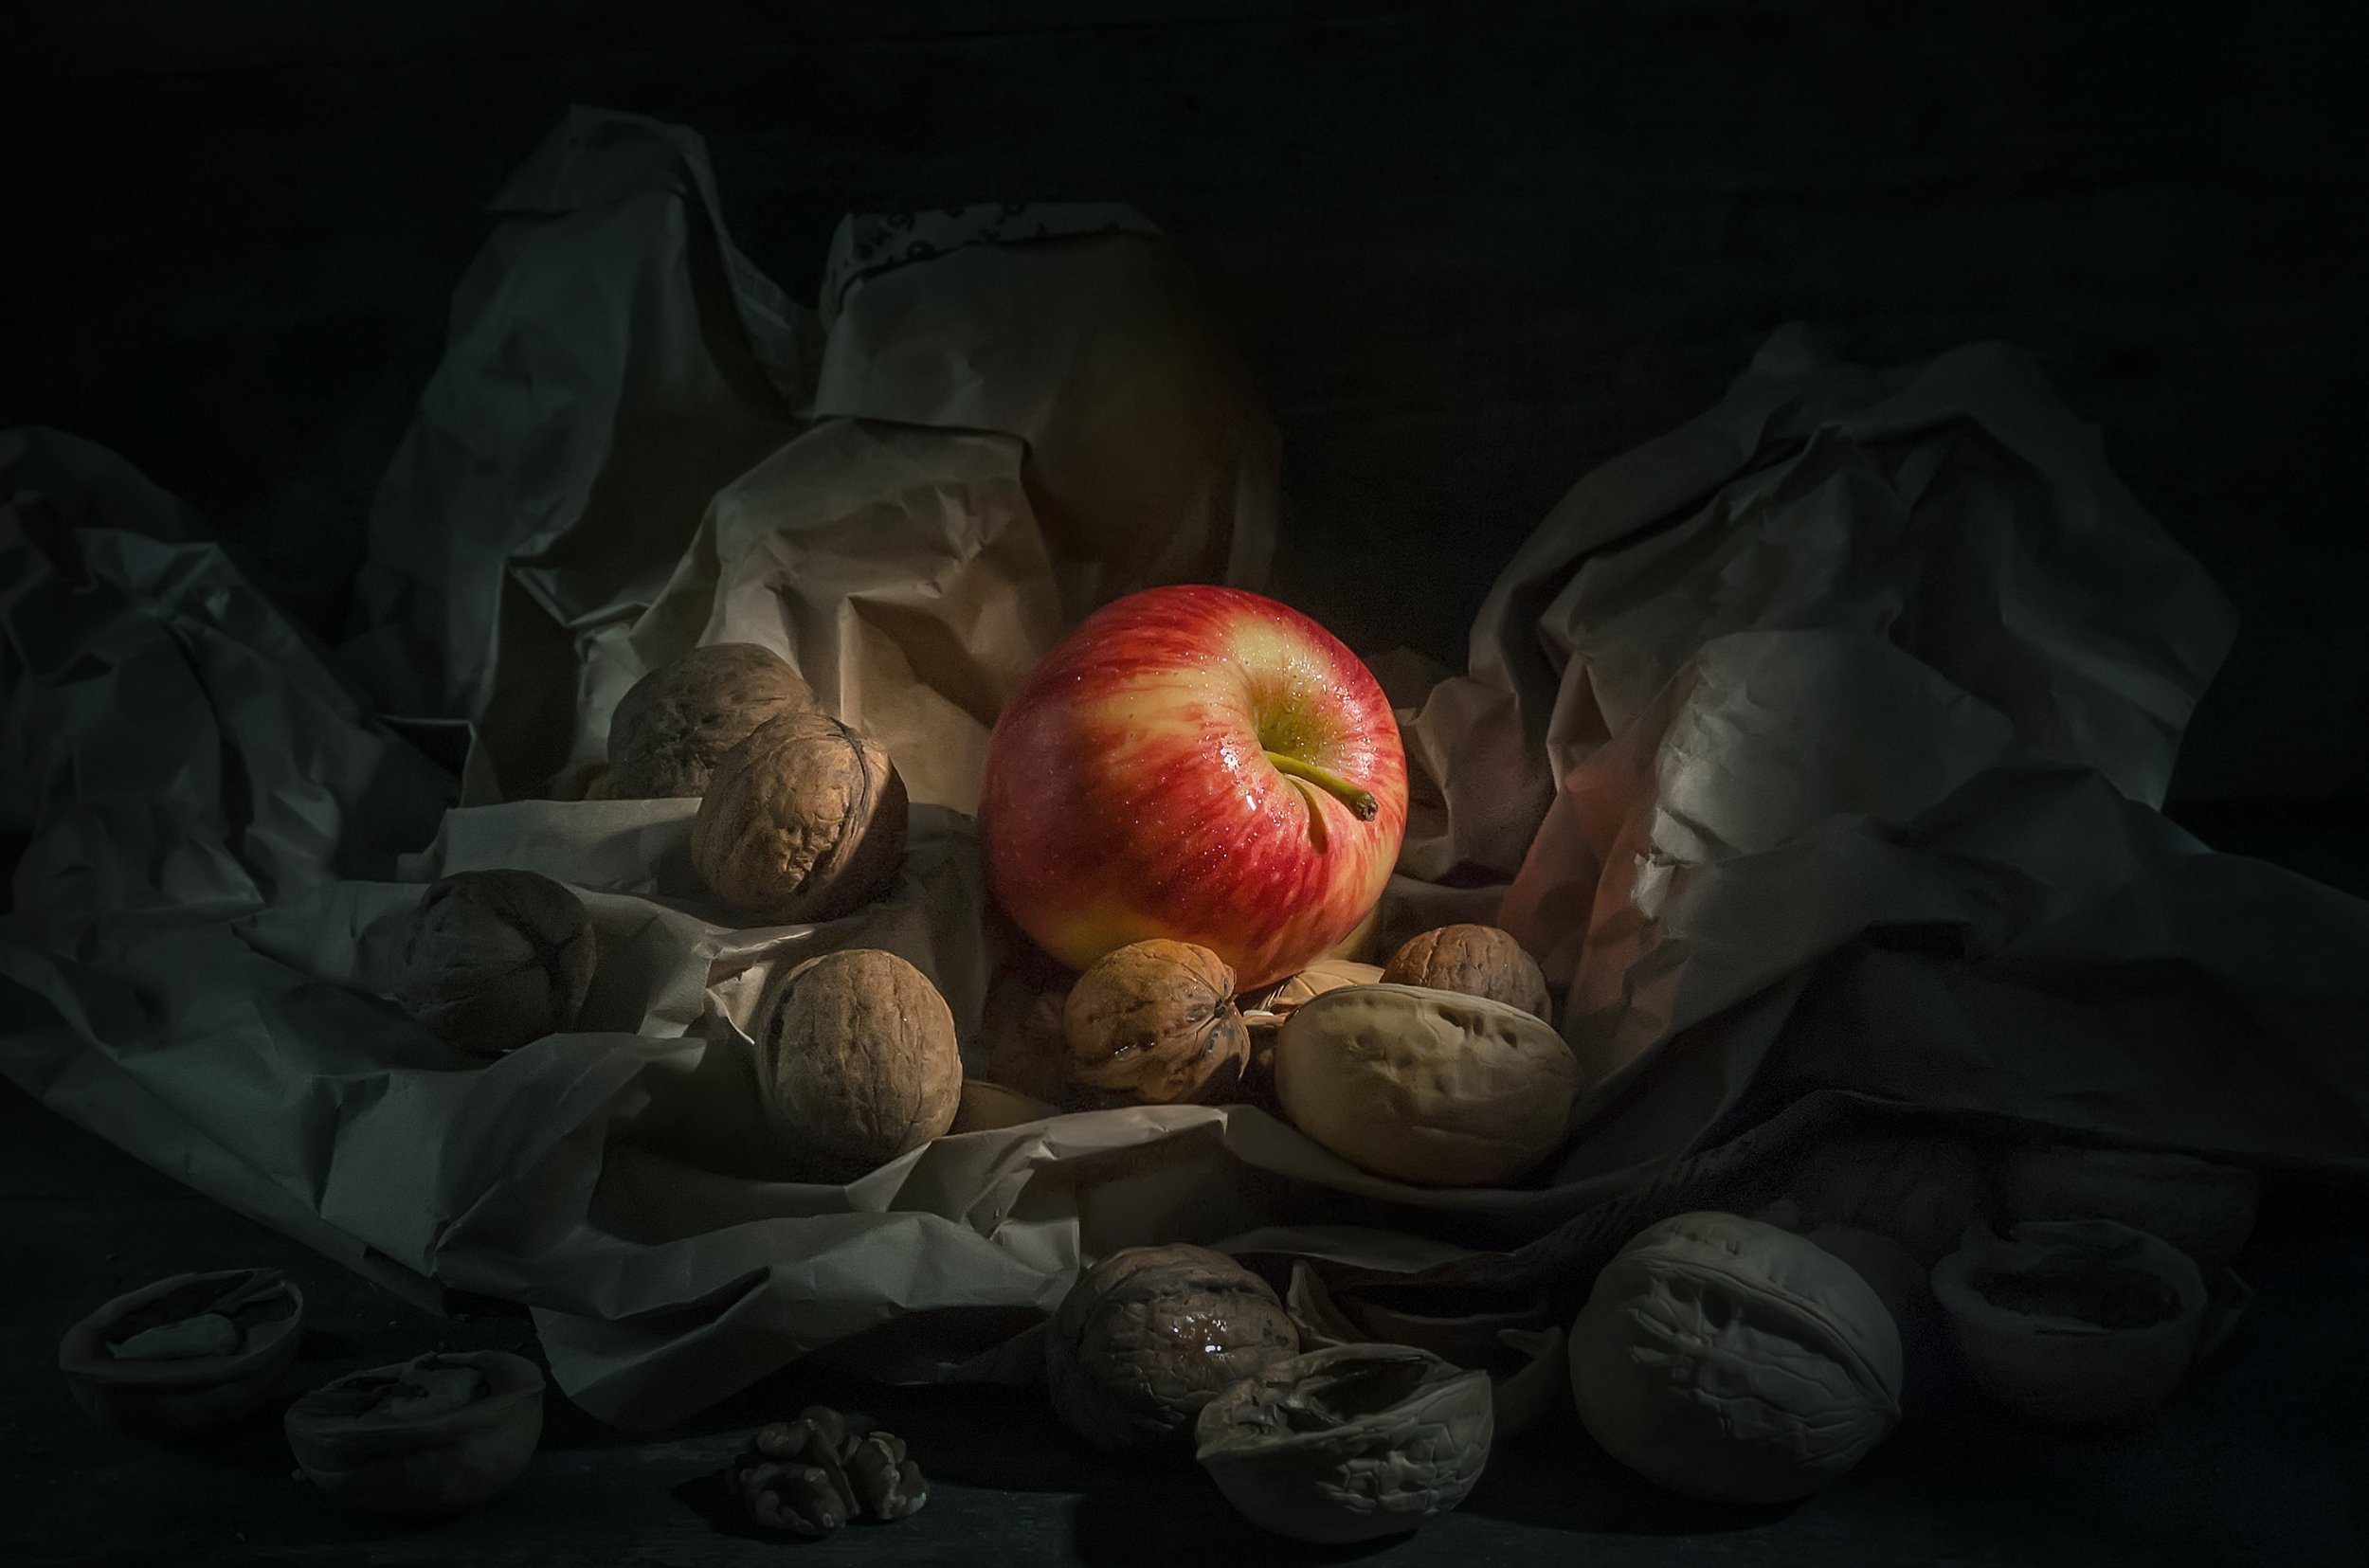 яблоко,орехи,чужой,свет,мятая бумага,темнота, Владимир Володин